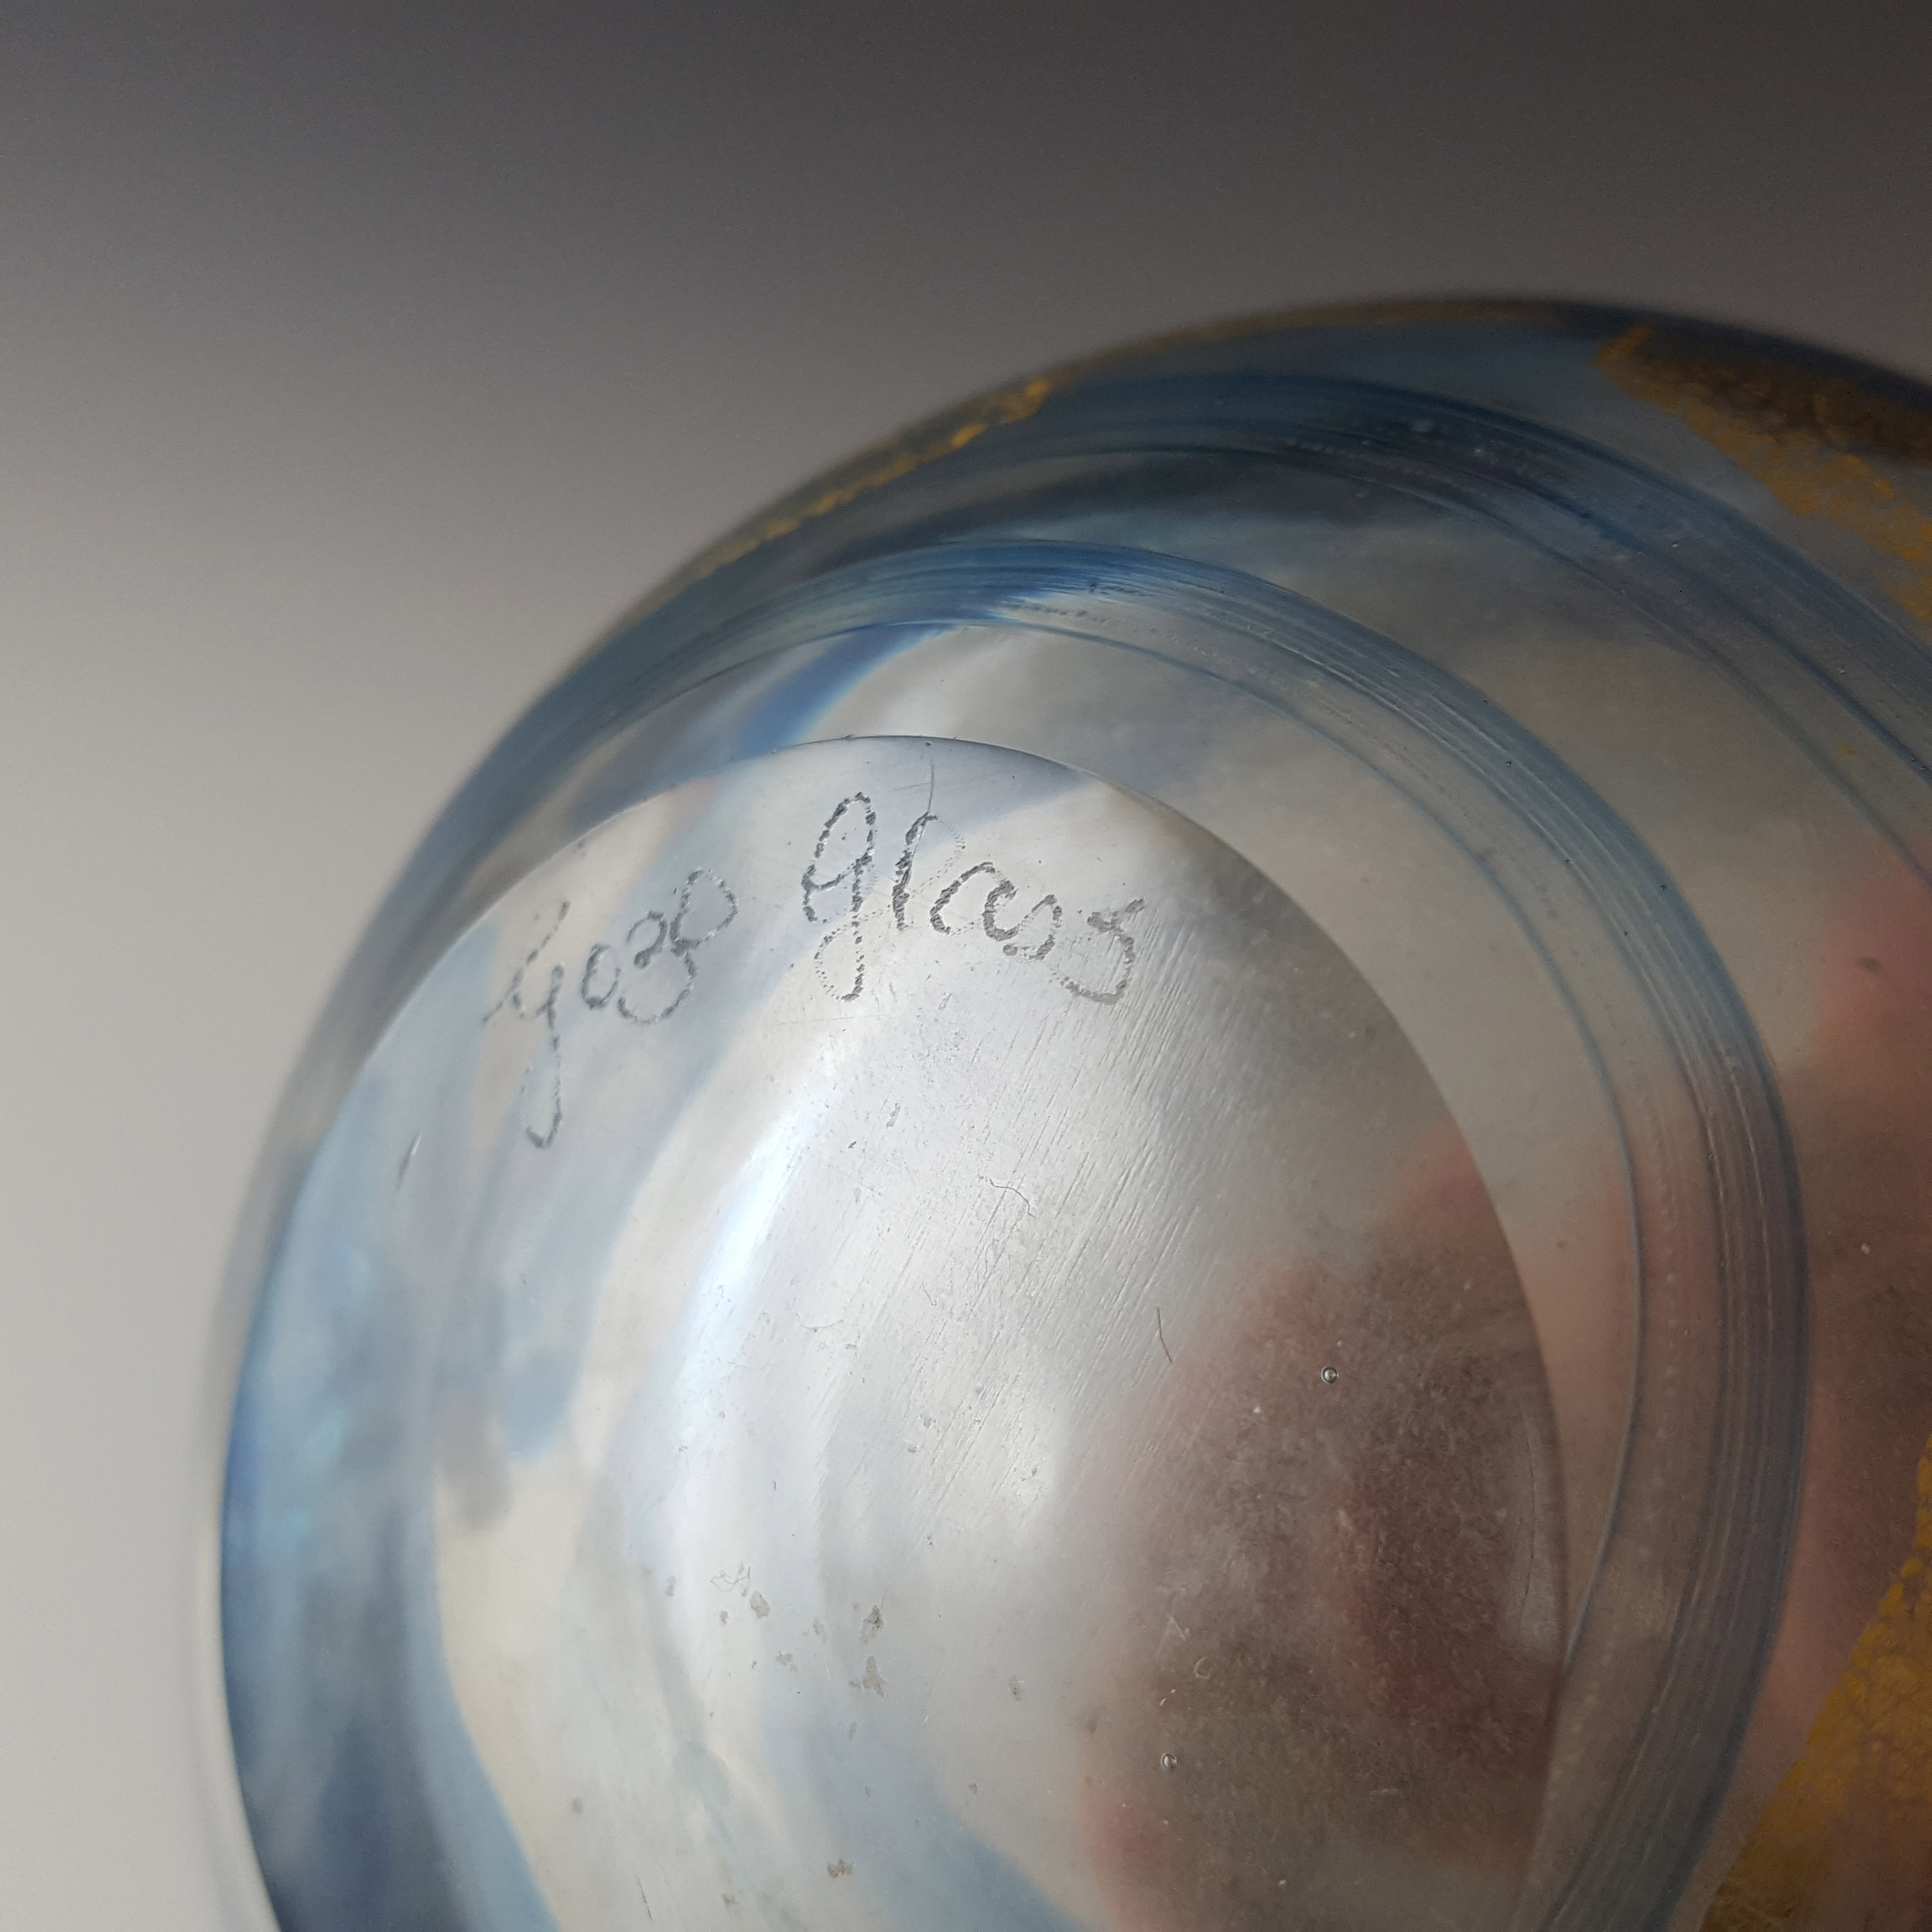 (image for) SIGNED + LABELLED Gozo Blue Glass & Gold Leaf Vintage Vase - Click Image to Close